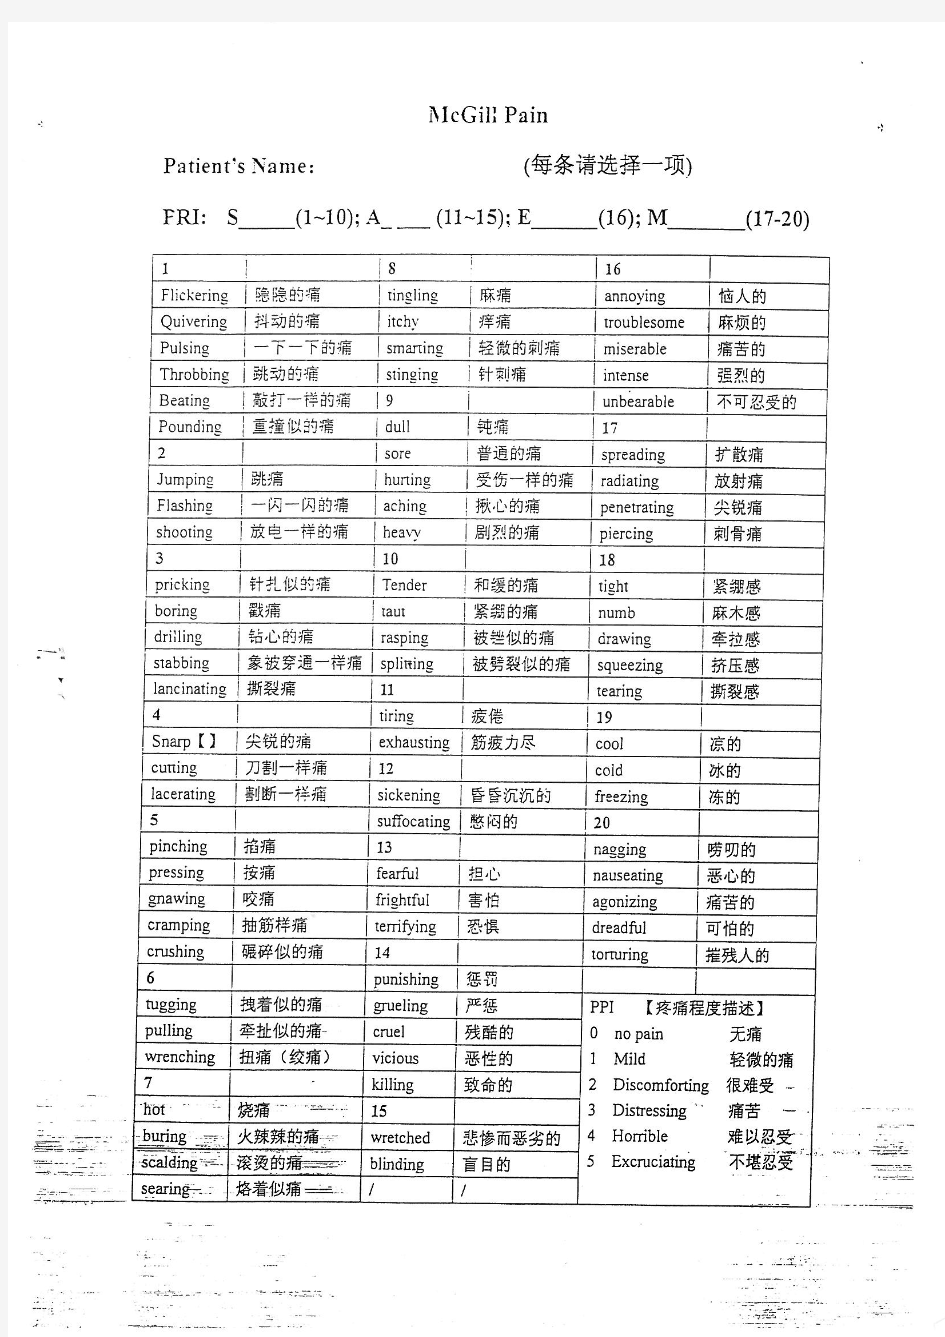 MPQ-疼痛评分问卷(中文版)